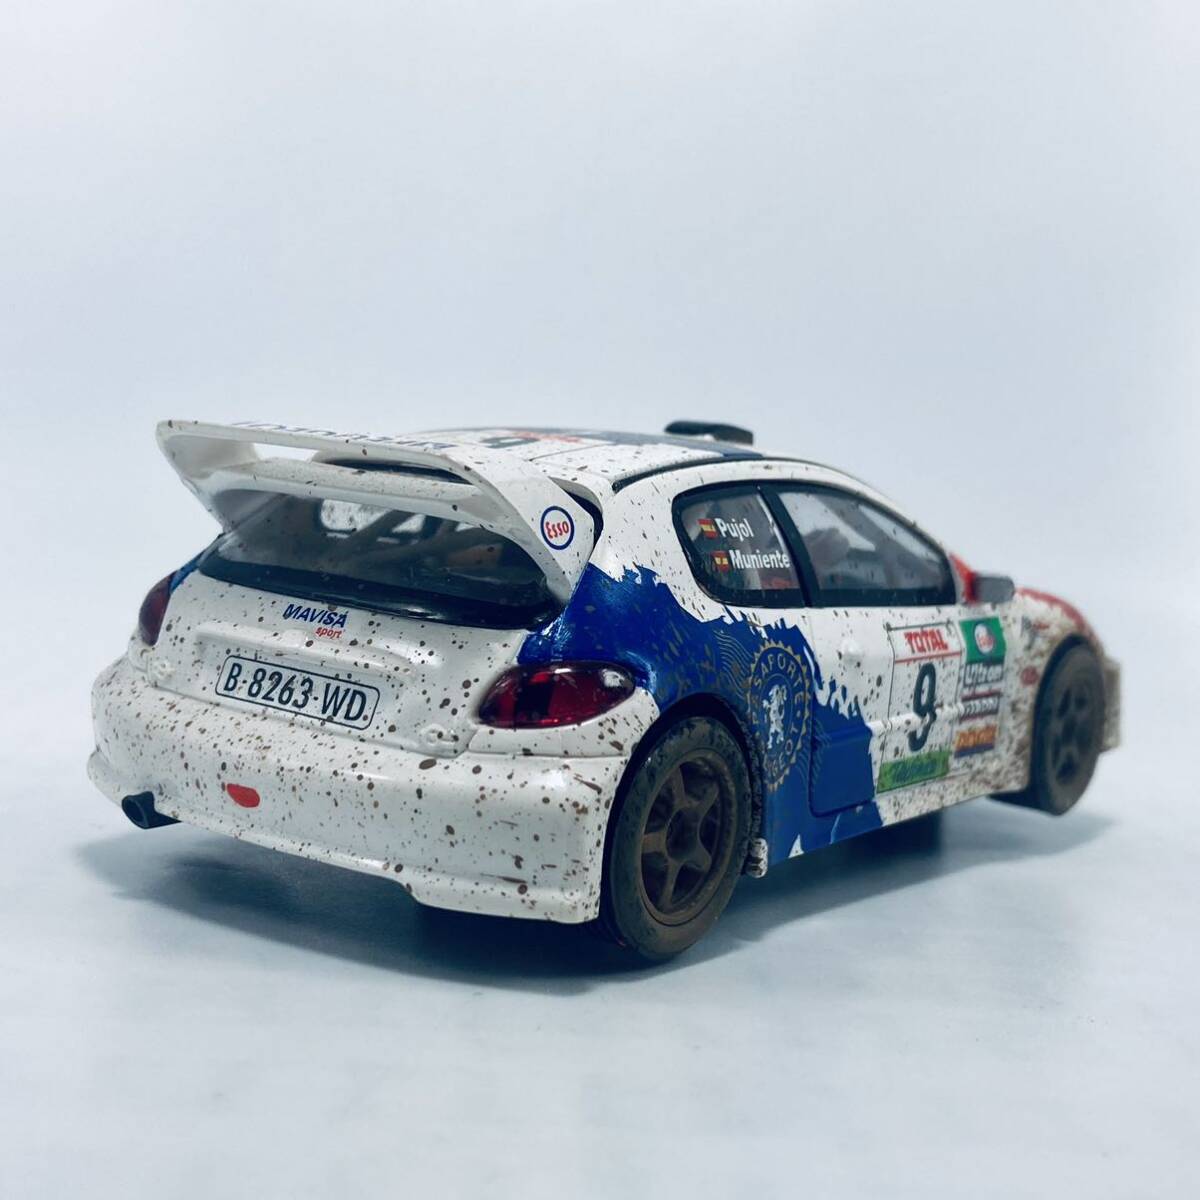 外箱台座無し スロットカー SCX 1/32 PEUGEOT 206 WRC 2001 ウェザリング(汚れ加工)仕様 MUDDY VERSION Whiteの画像3